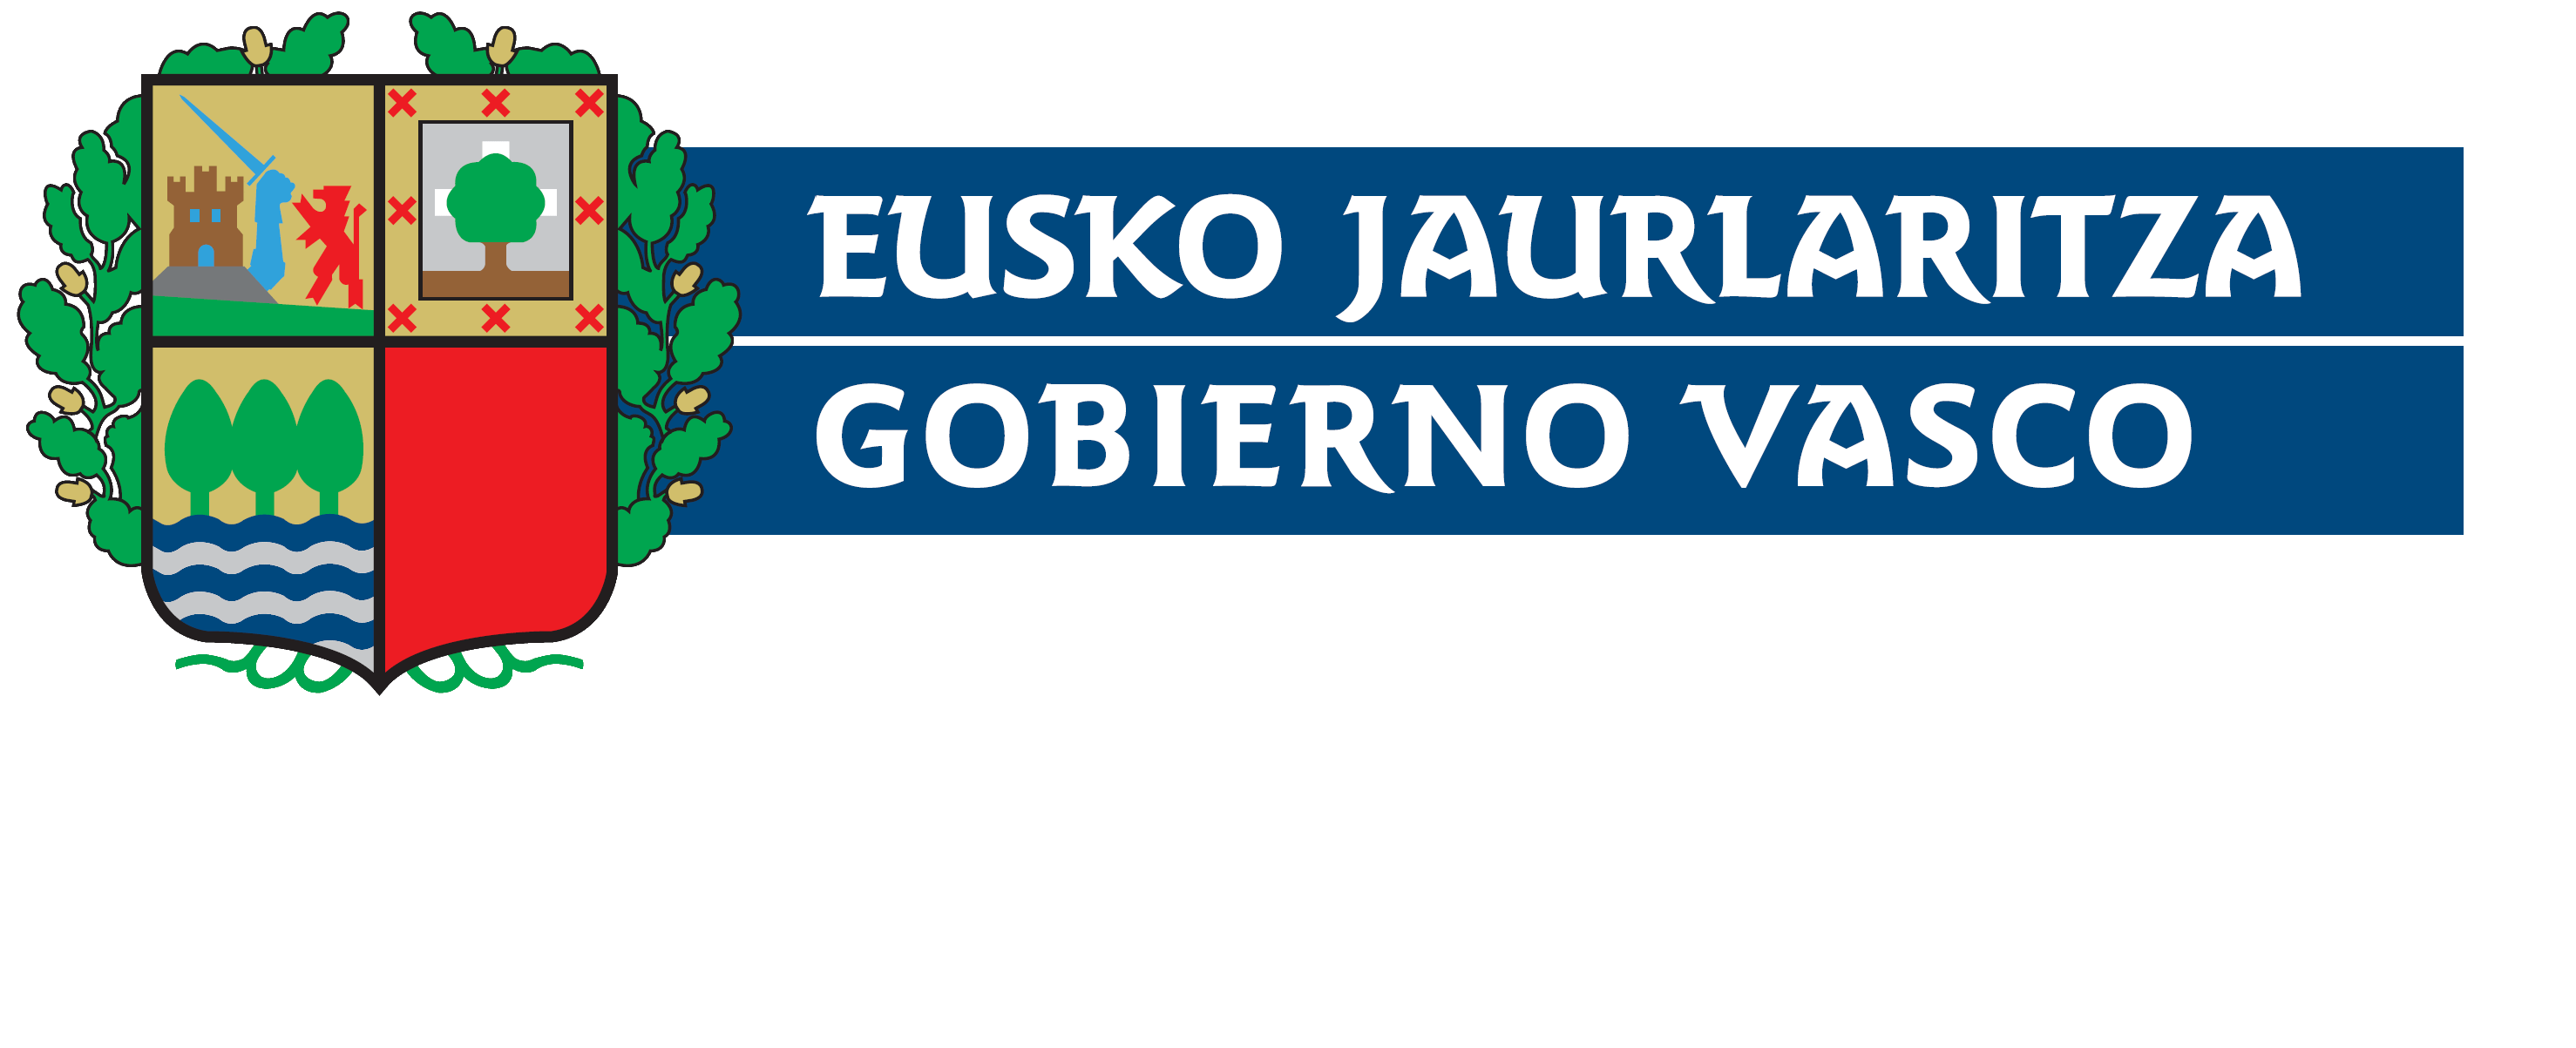 GIZAKIA - Logo Gobierno Vasco general